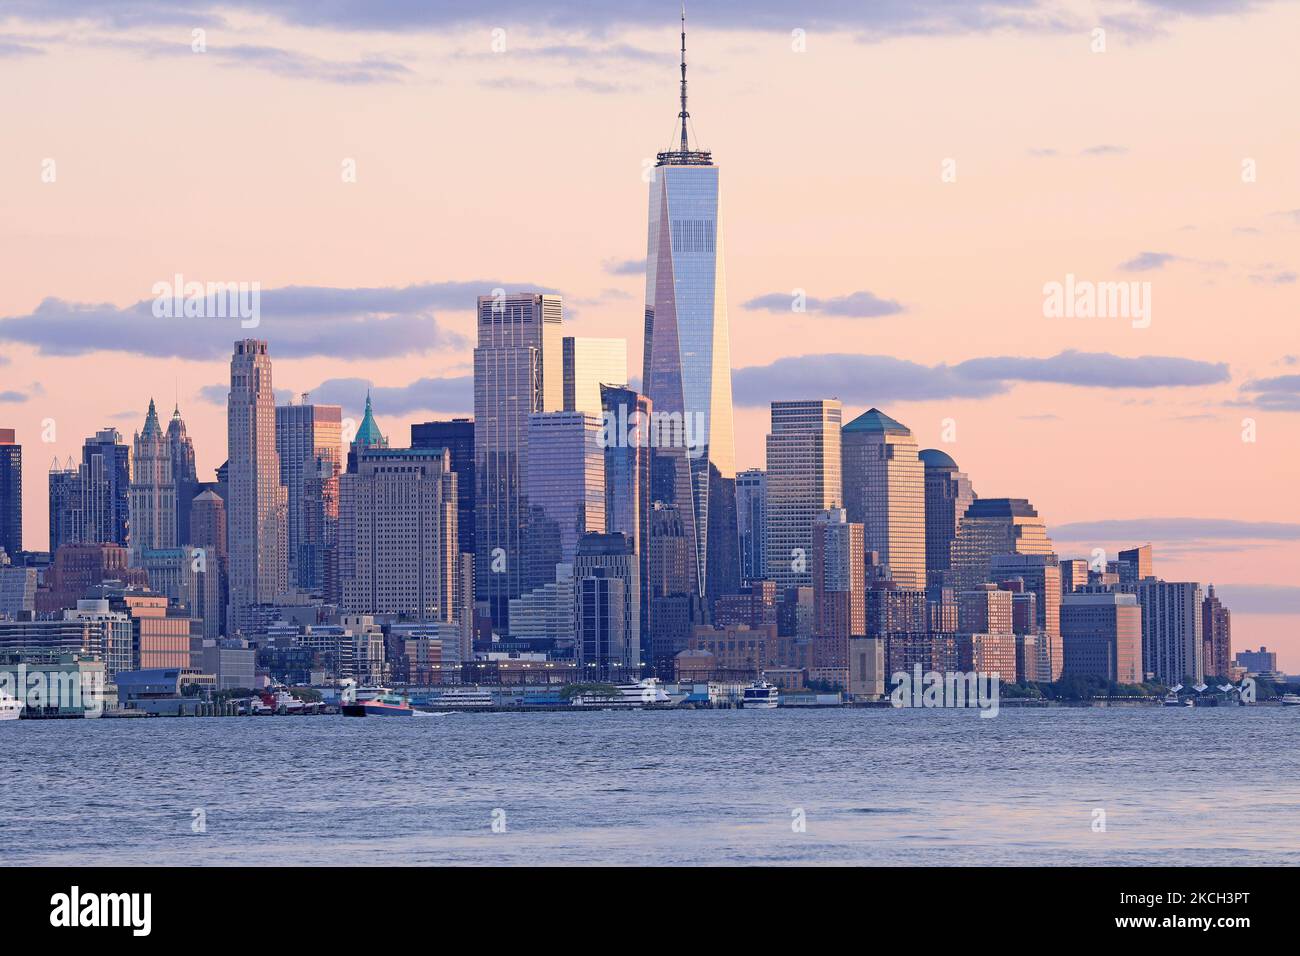 Les gratte-ciels de New York City (Lower Manhattan) vue de l'eau après le coucher du soleil, USA Banque D'Images